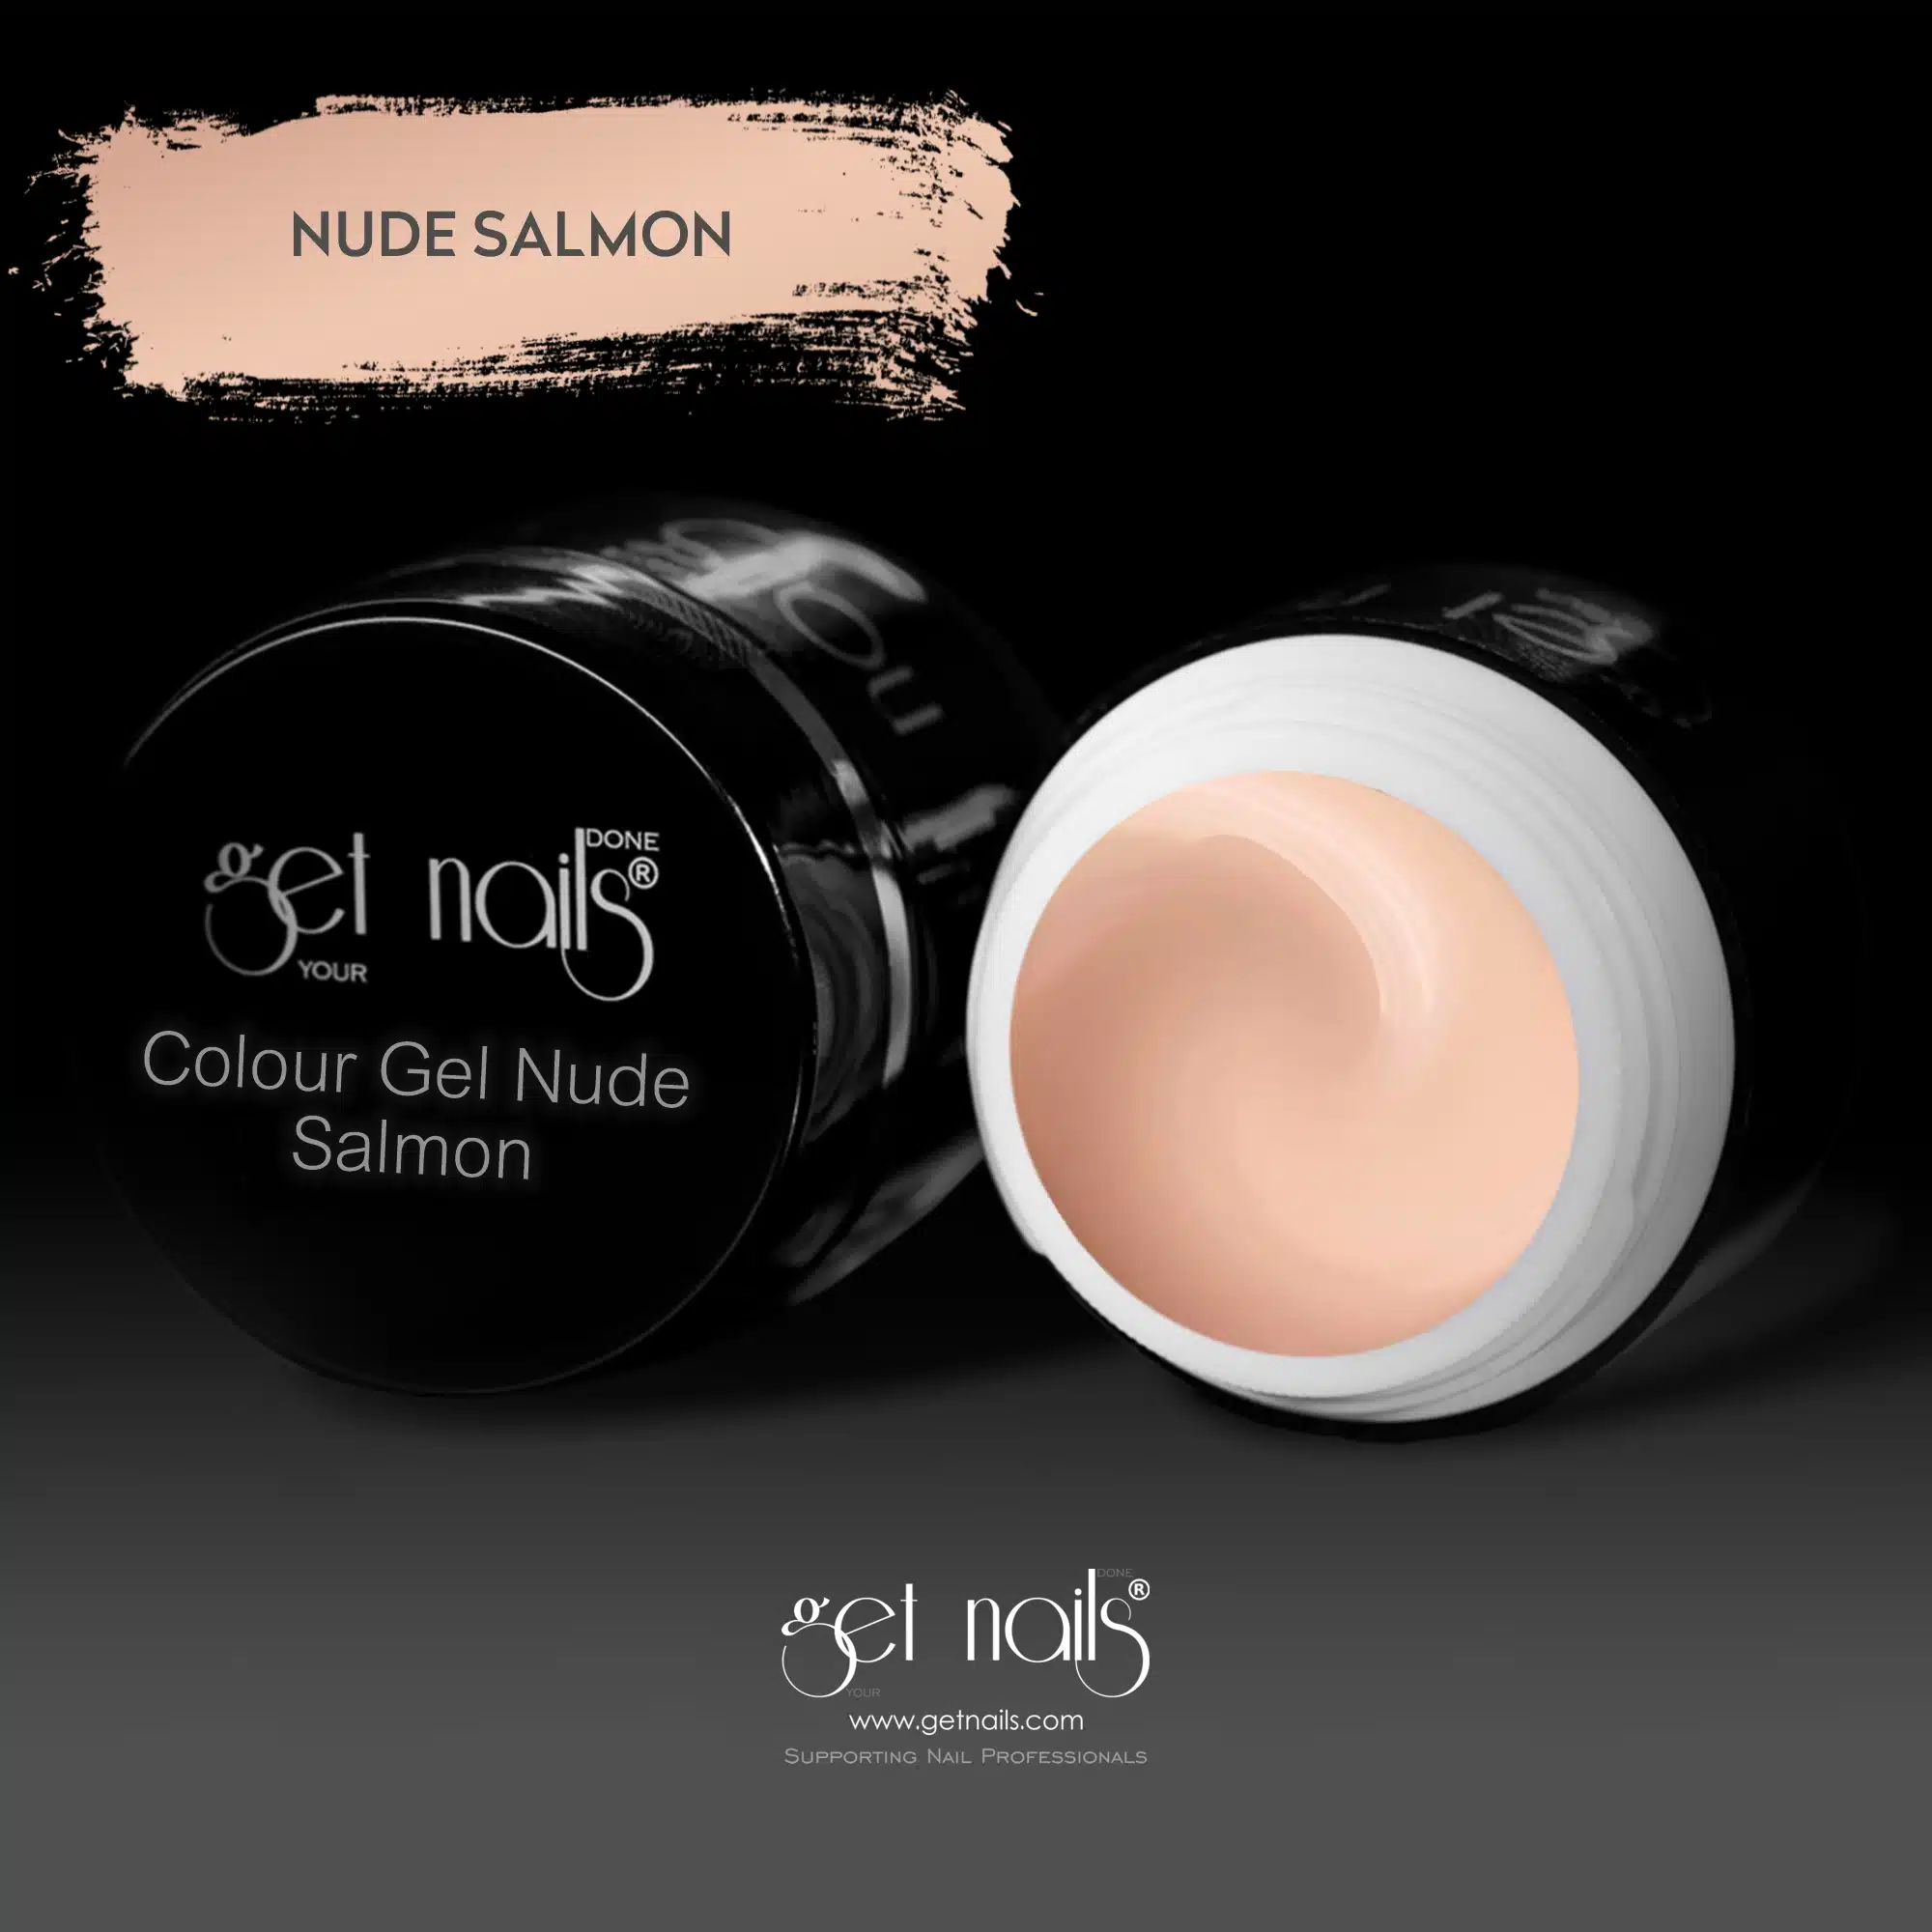 Get Nails Austria - Colour Gel Nude Salmon 5g